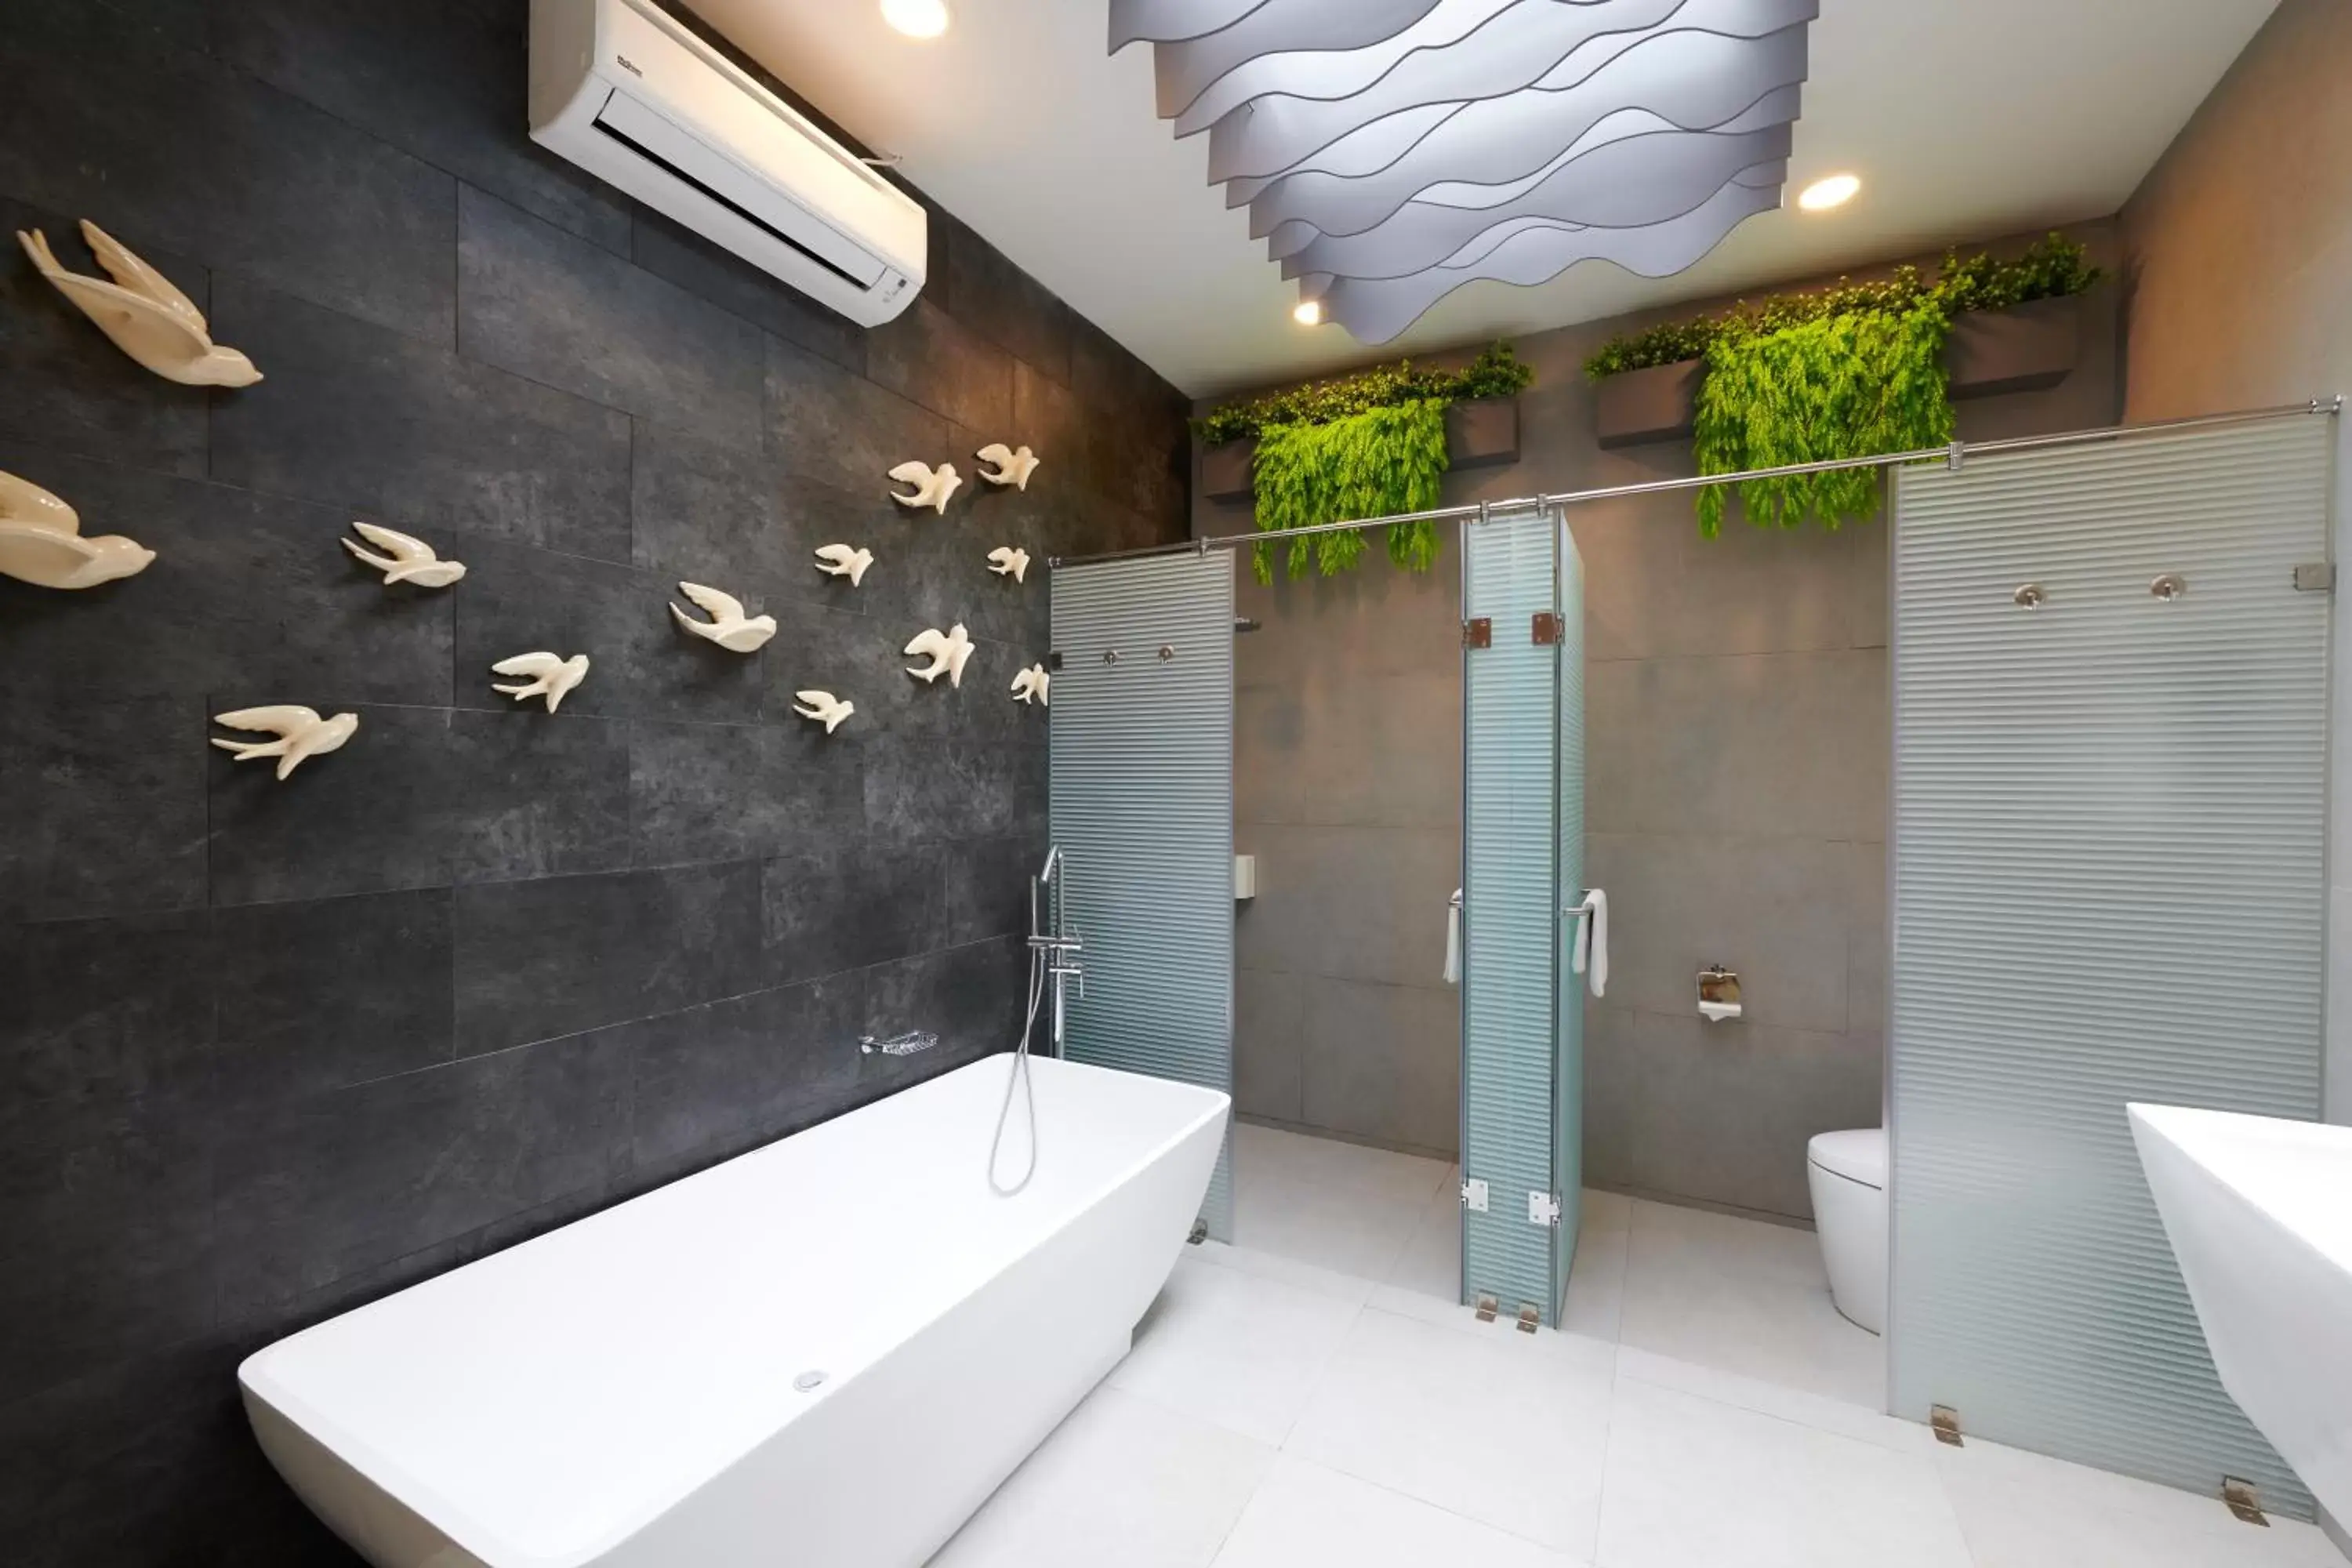 Bathroom in Verse Luxe Hotel Wahid Hasyim